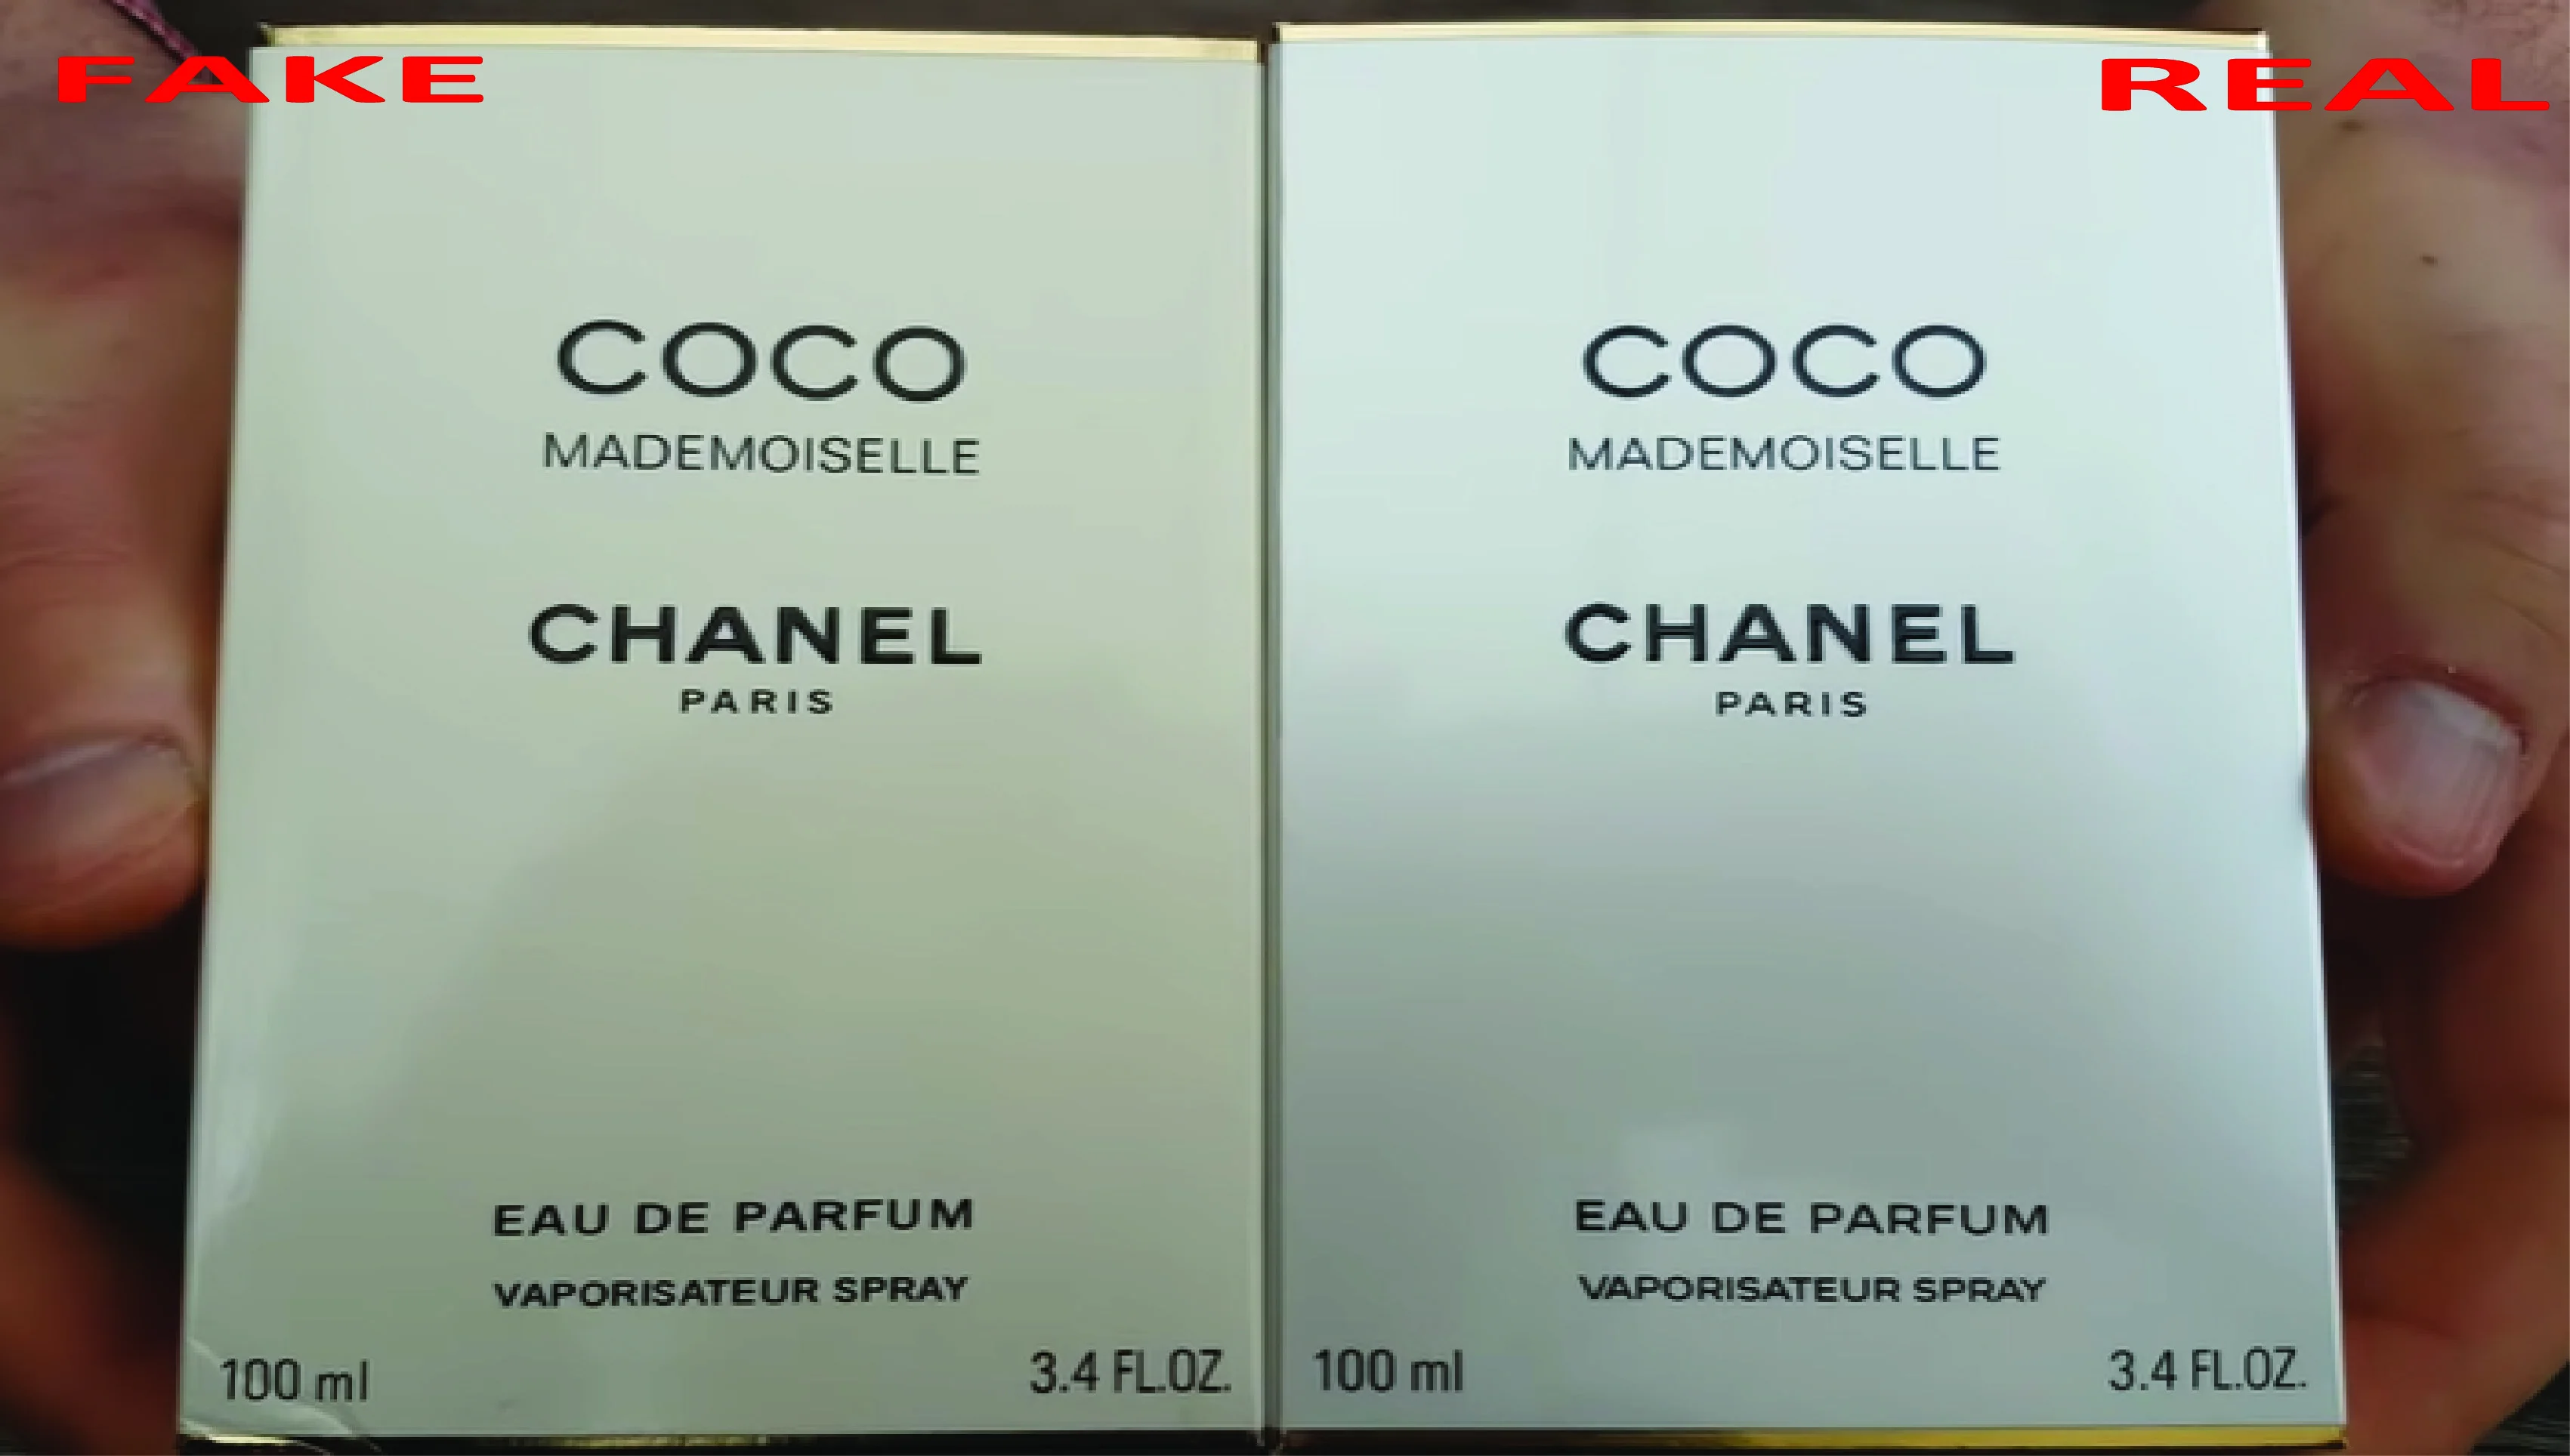 Counterfeit Chanel Coco Noir Fragrances  Consumer Alert